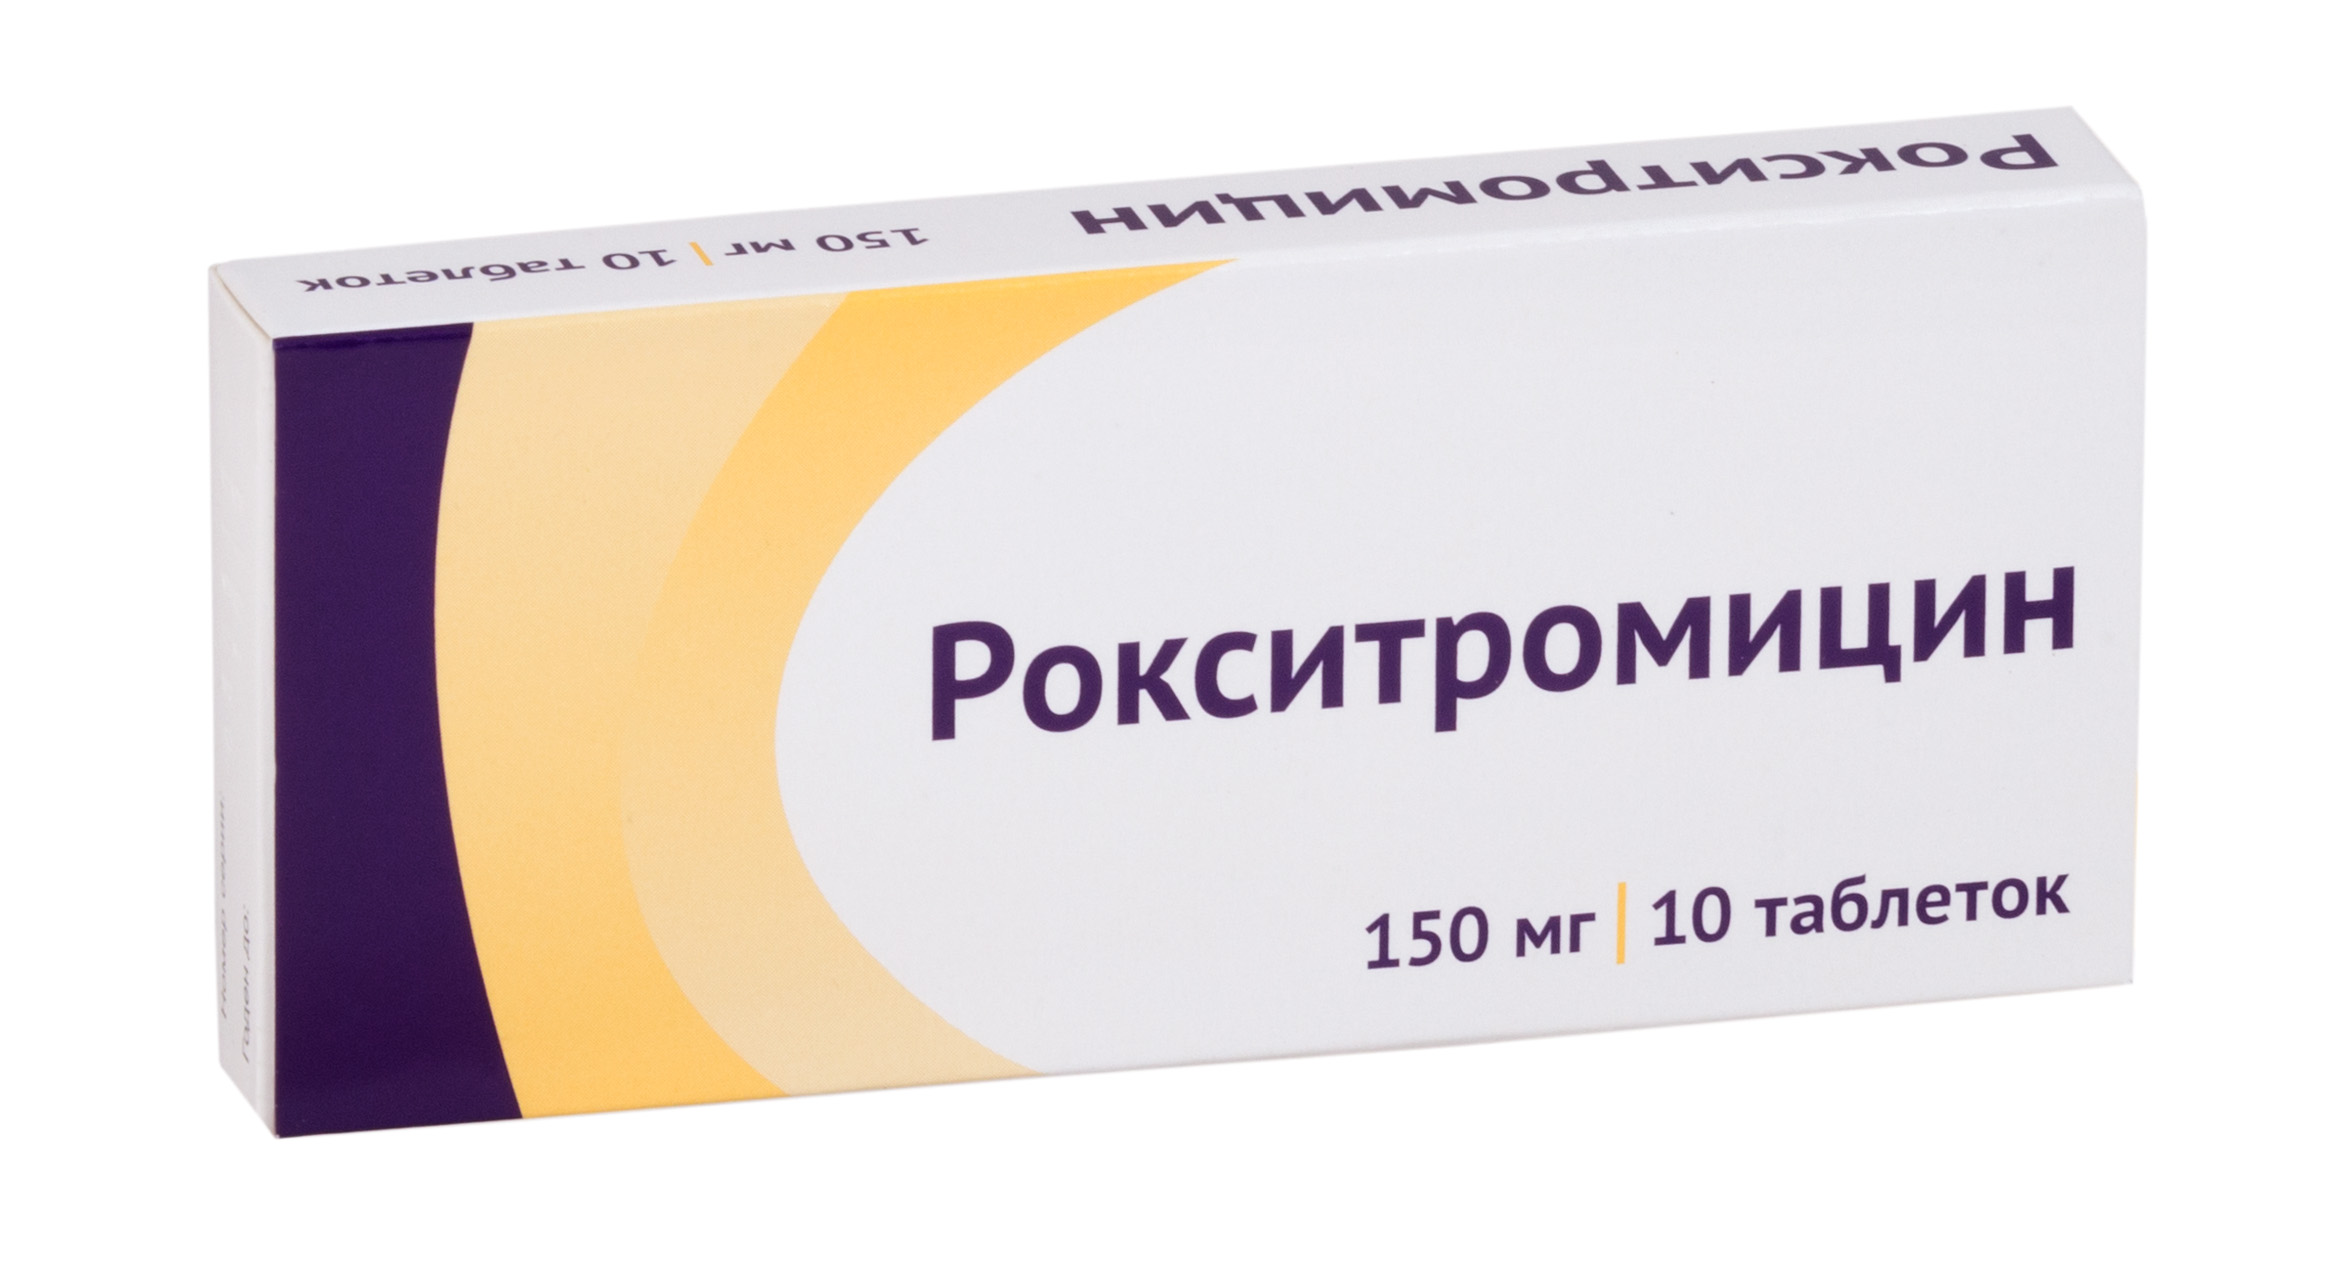 Aptekirls :: Рокситромицин таб. п.п.о. 150мг n10 — заказать онлайн и .